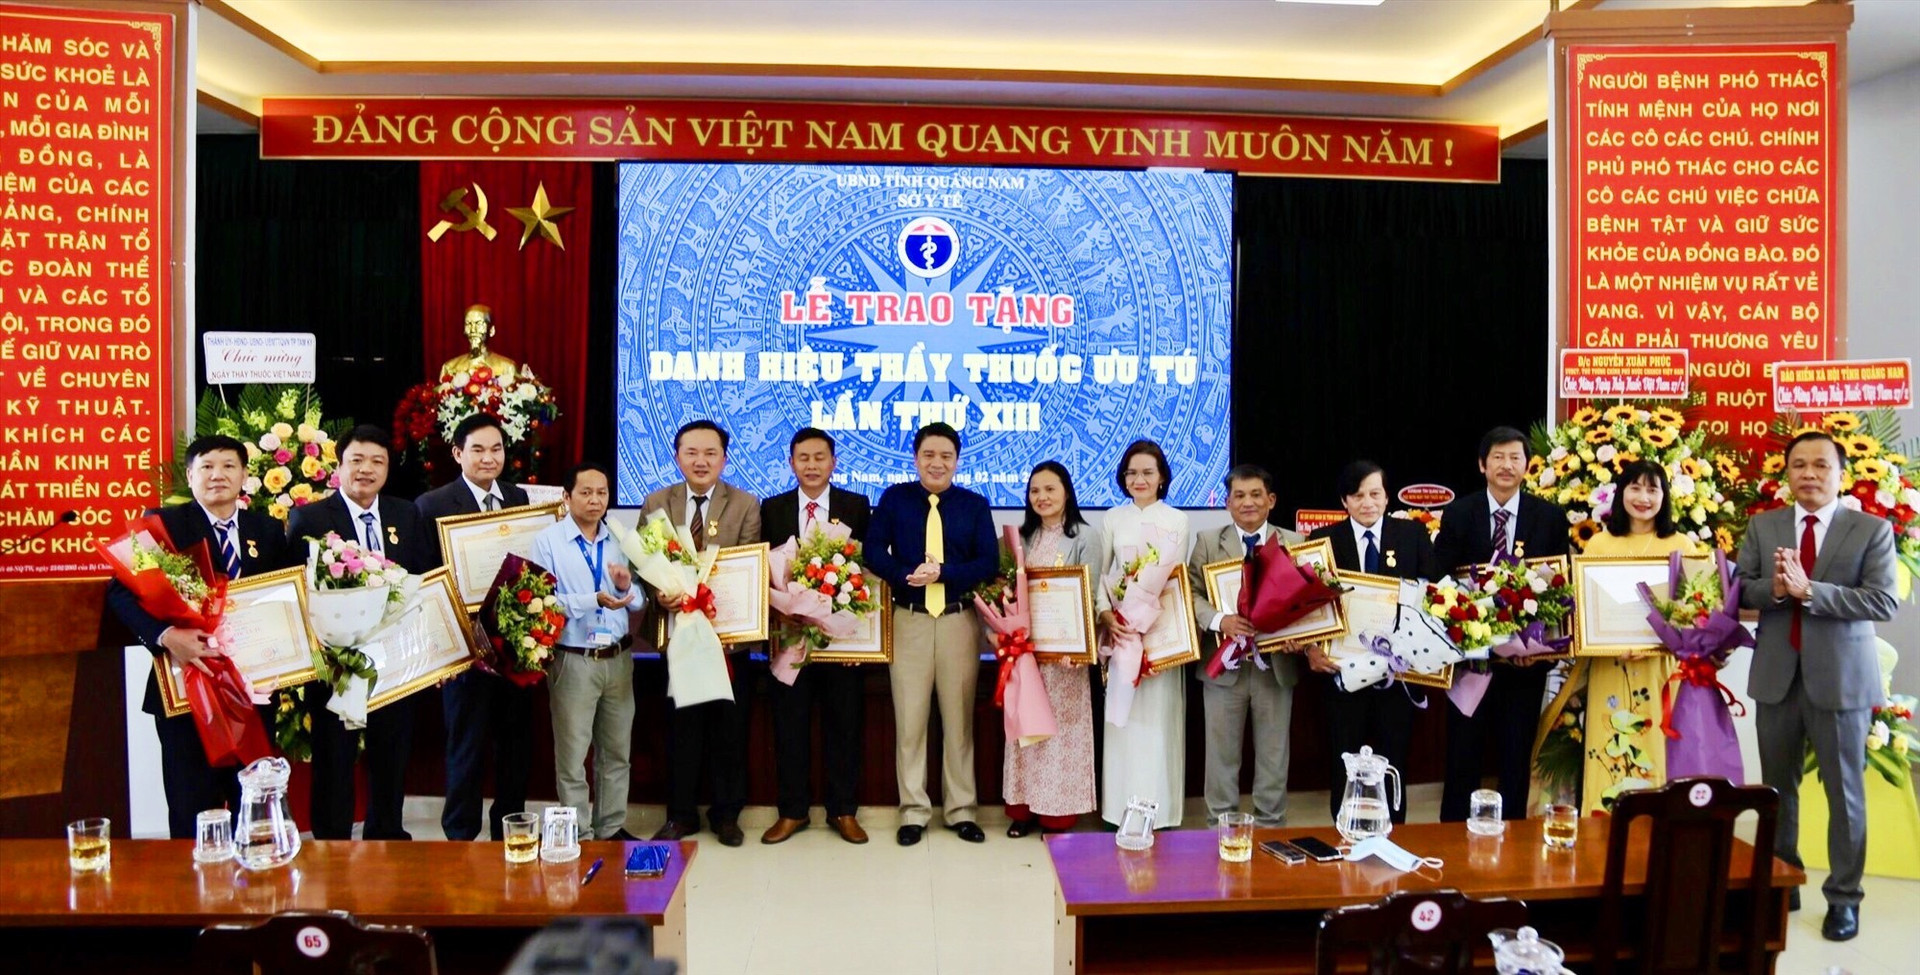 Phó Chủ tịch UBND tỉnh Trần Văn Tân thừa ủy quyền Chủ tịch nước trao tặng danh hiệu Thầy thuốc ưu tú cho 11 cá nhân.